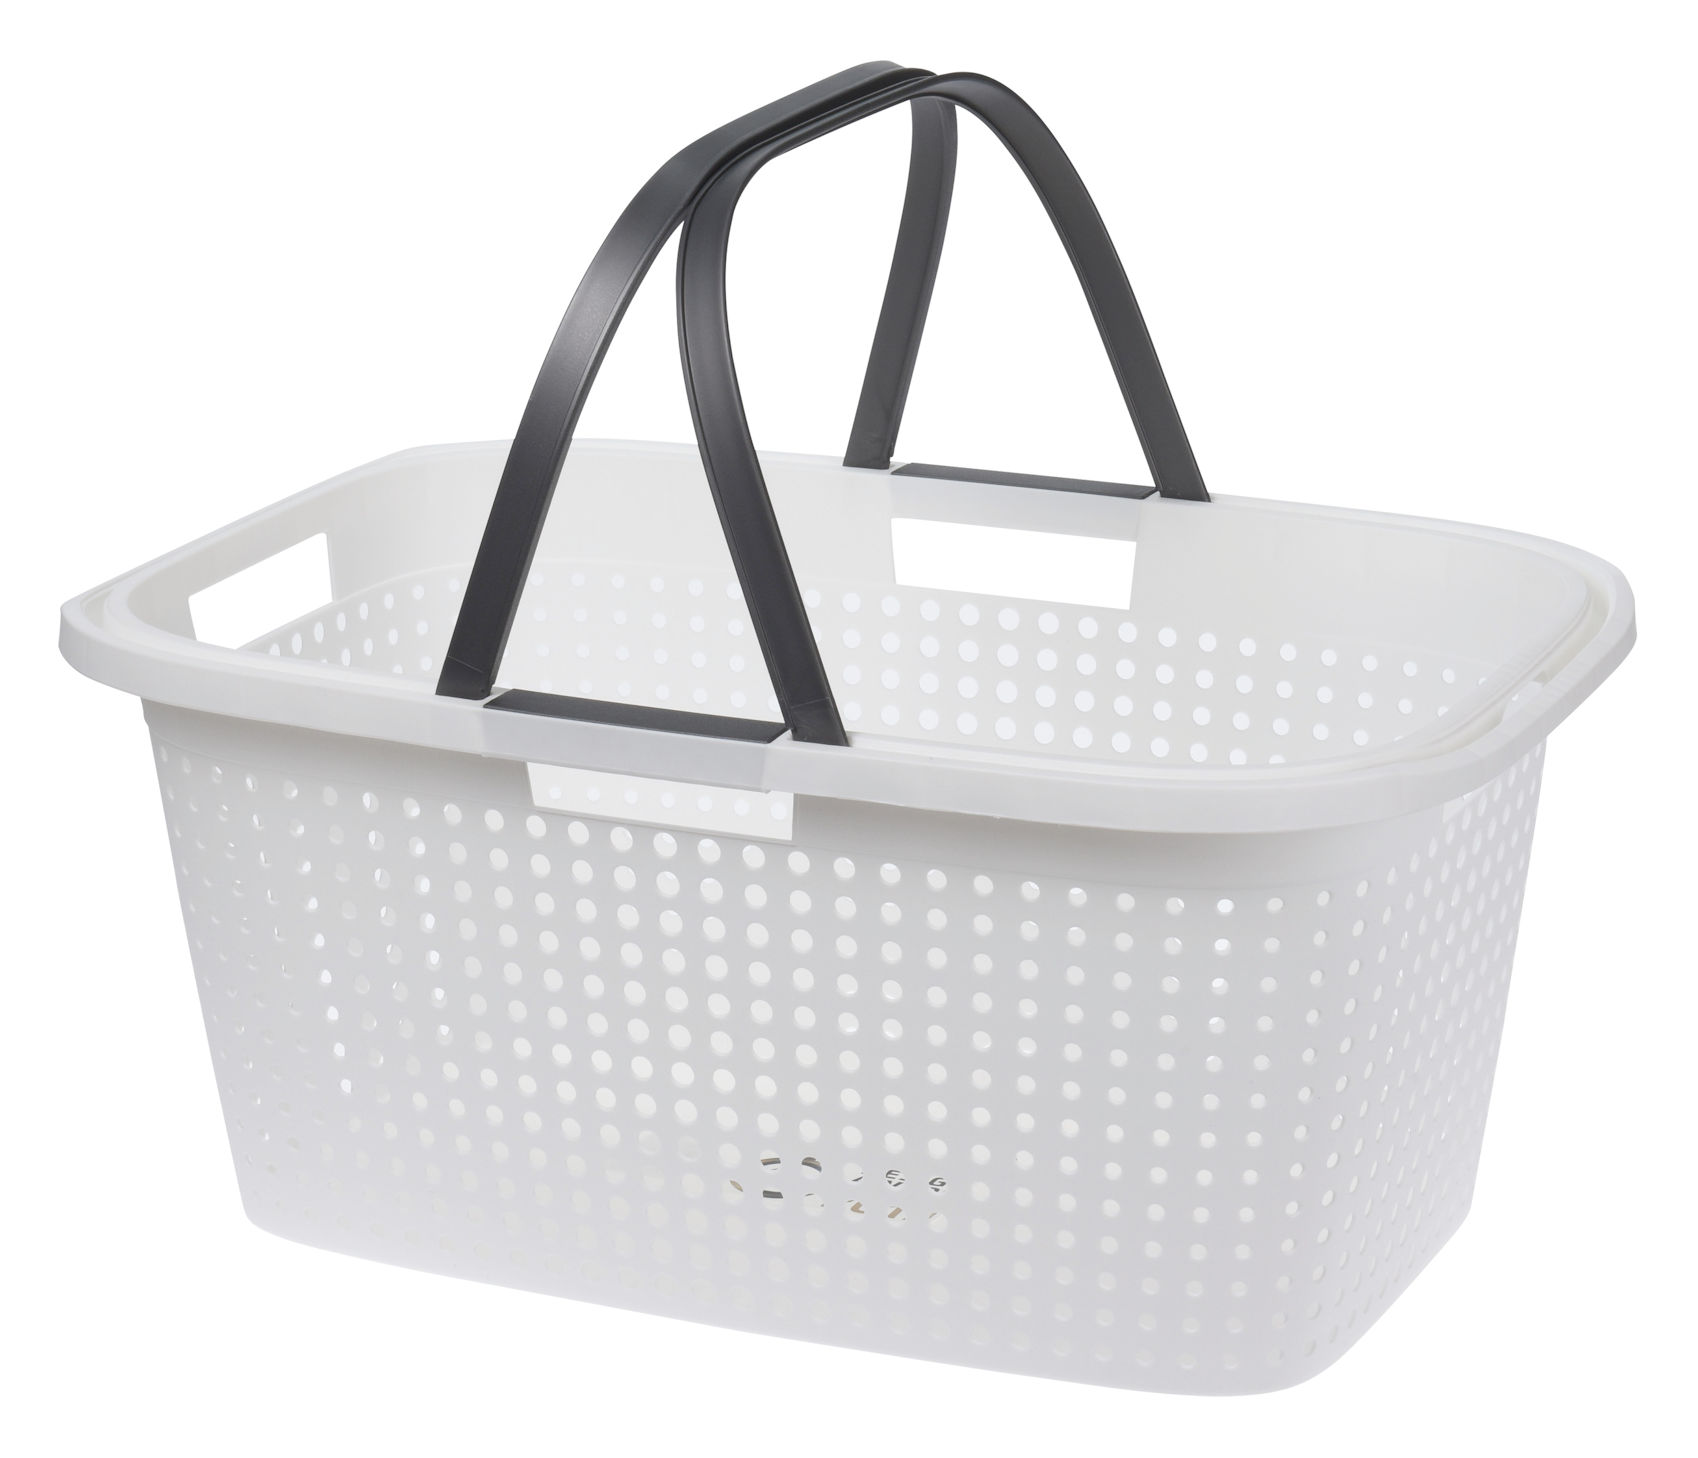 XL Wäschekorb aus Kunststoff 60 x 39 cm - weiß oder schwarz - Tragekorb mit klappbaren Griffen